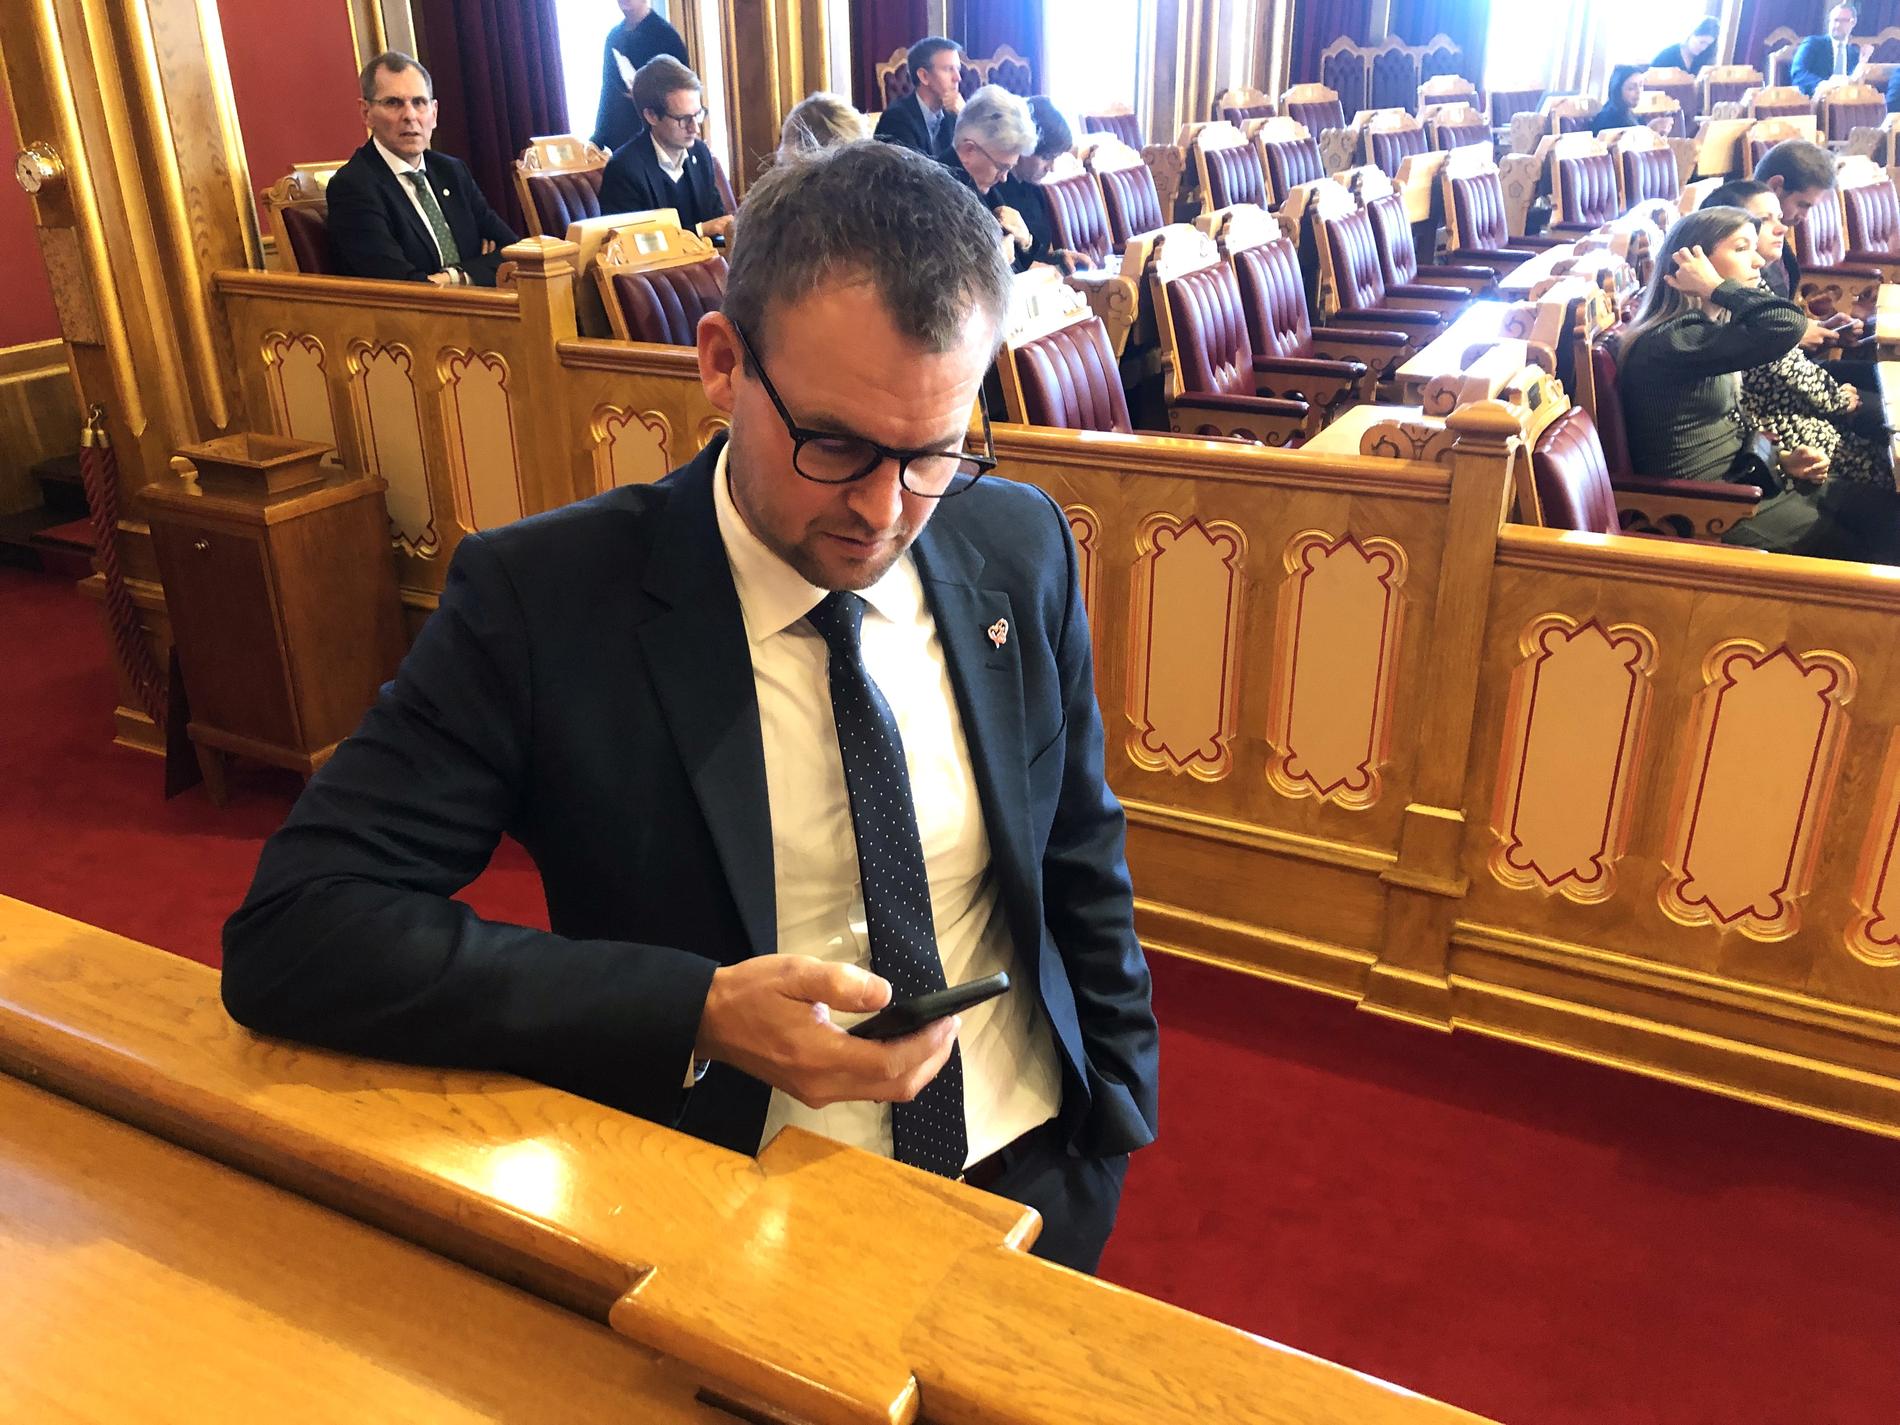 CELLULARE NELLA SALA DEL PARLAMENTO: Kjell Ingolf Ropstad (KrF) controlla il suo cellulare mentre si reca al suo posto nell'aula del Parlamento.